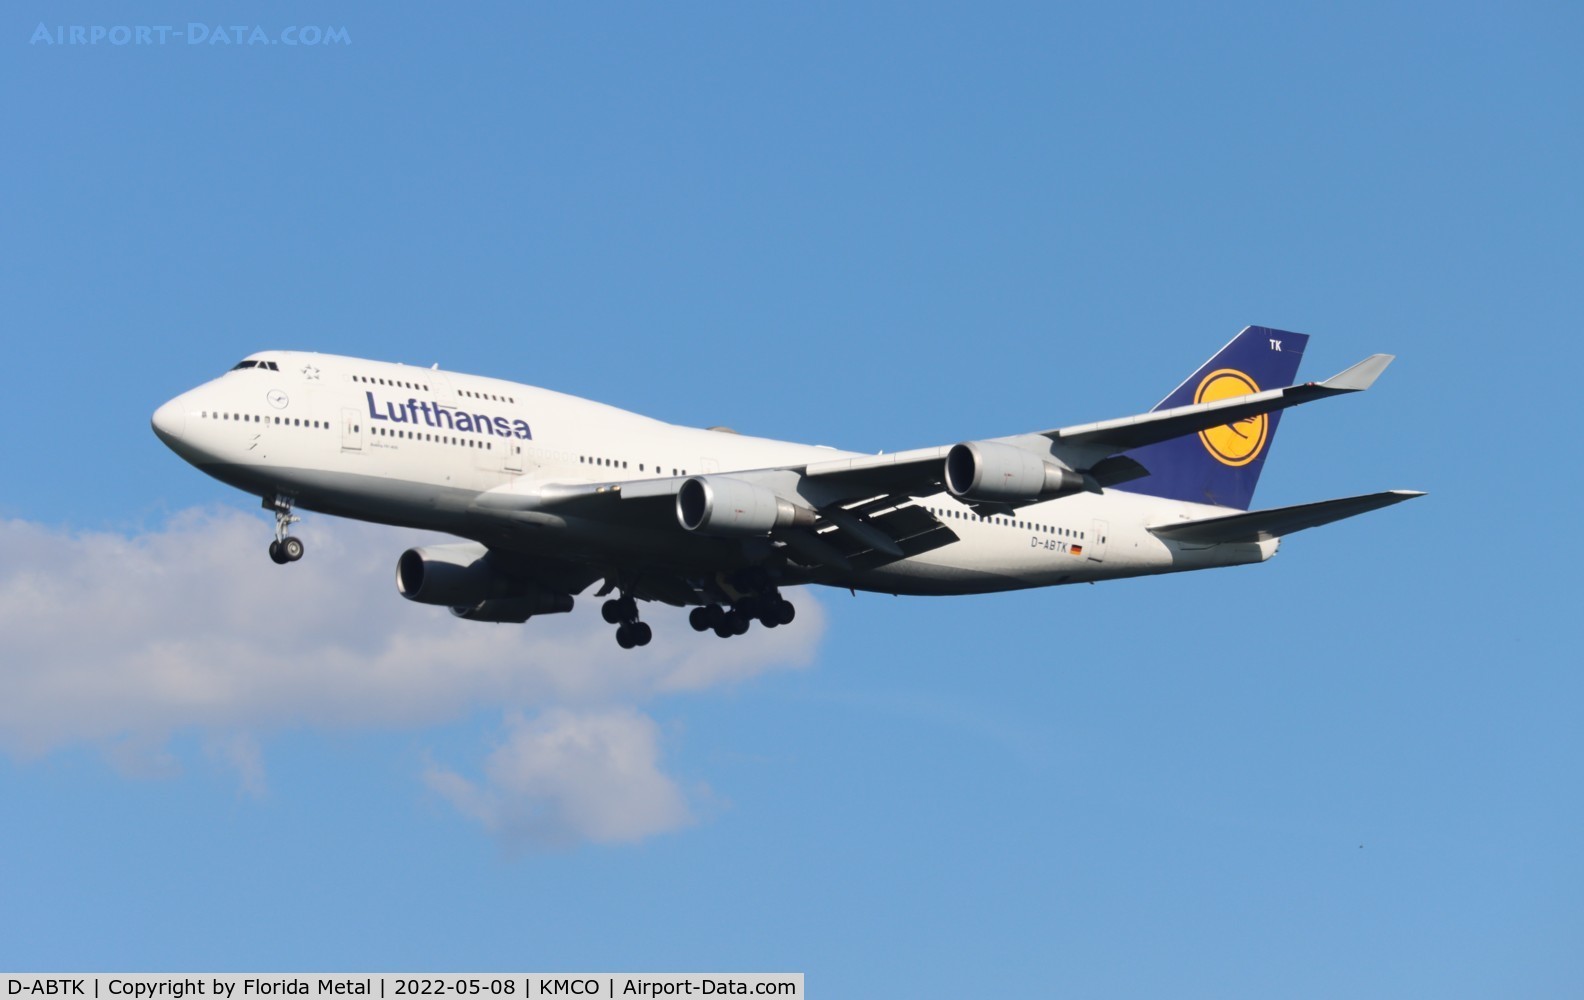 D-ABTK, 2001 Boeing 747-430 C/N 29871, Lufthansa 744 zx